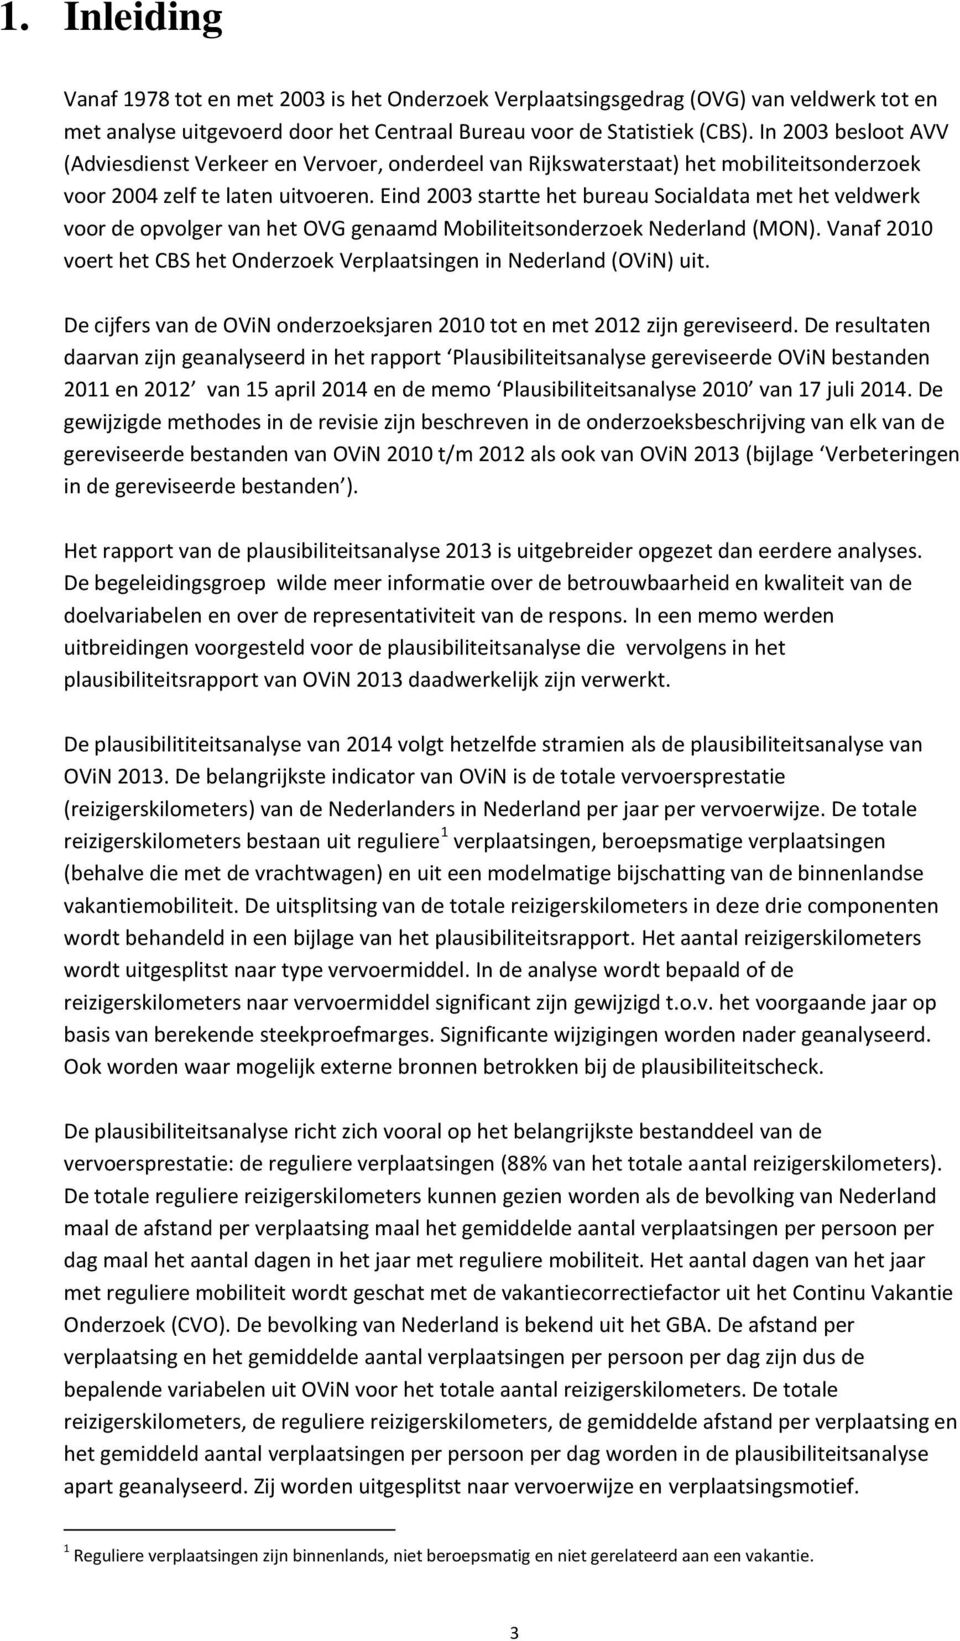 Eind 2003 startte het bureau Socialdata met het veldwerk voor de opvolger van het OVG genaamd Mobiliteitsonderzoek Nederland (MON).